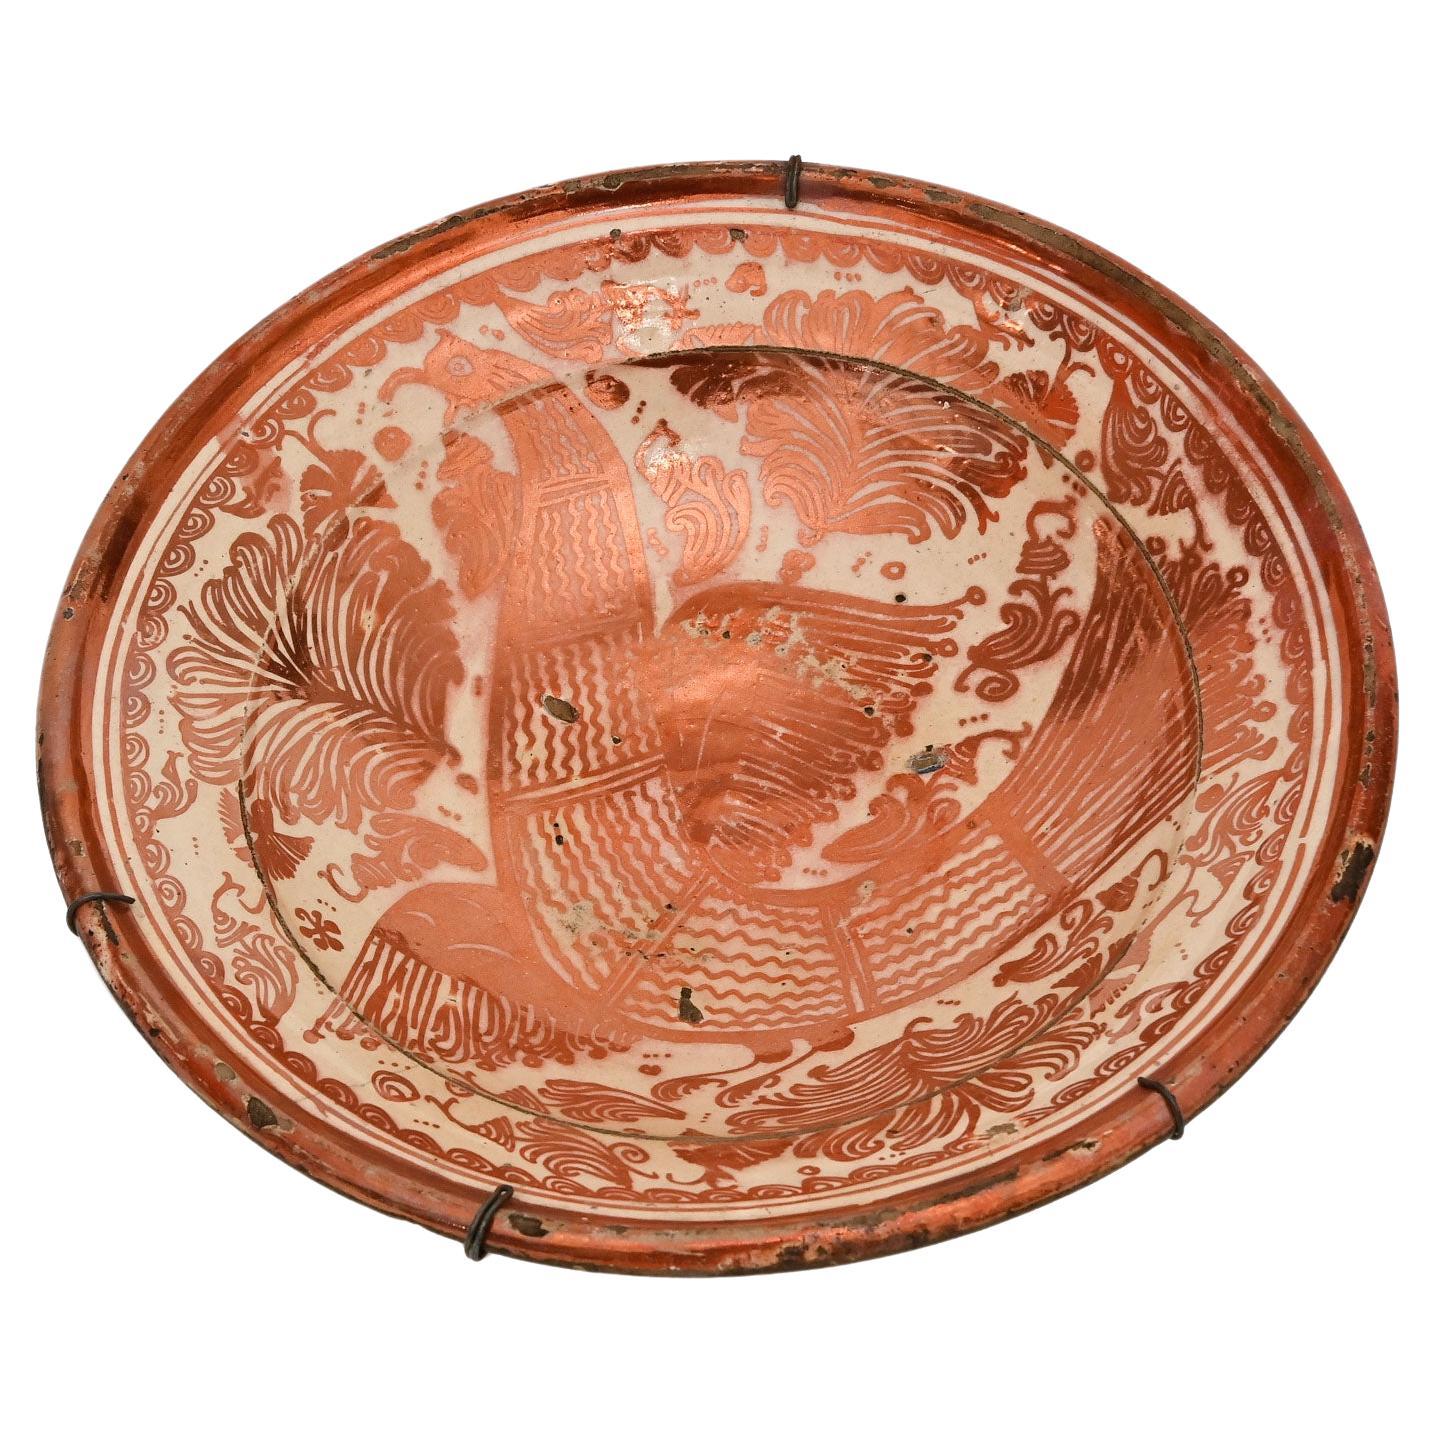 Assiette en céramique espagnole Manises du 18ème siècle décorée de peintures lustrées